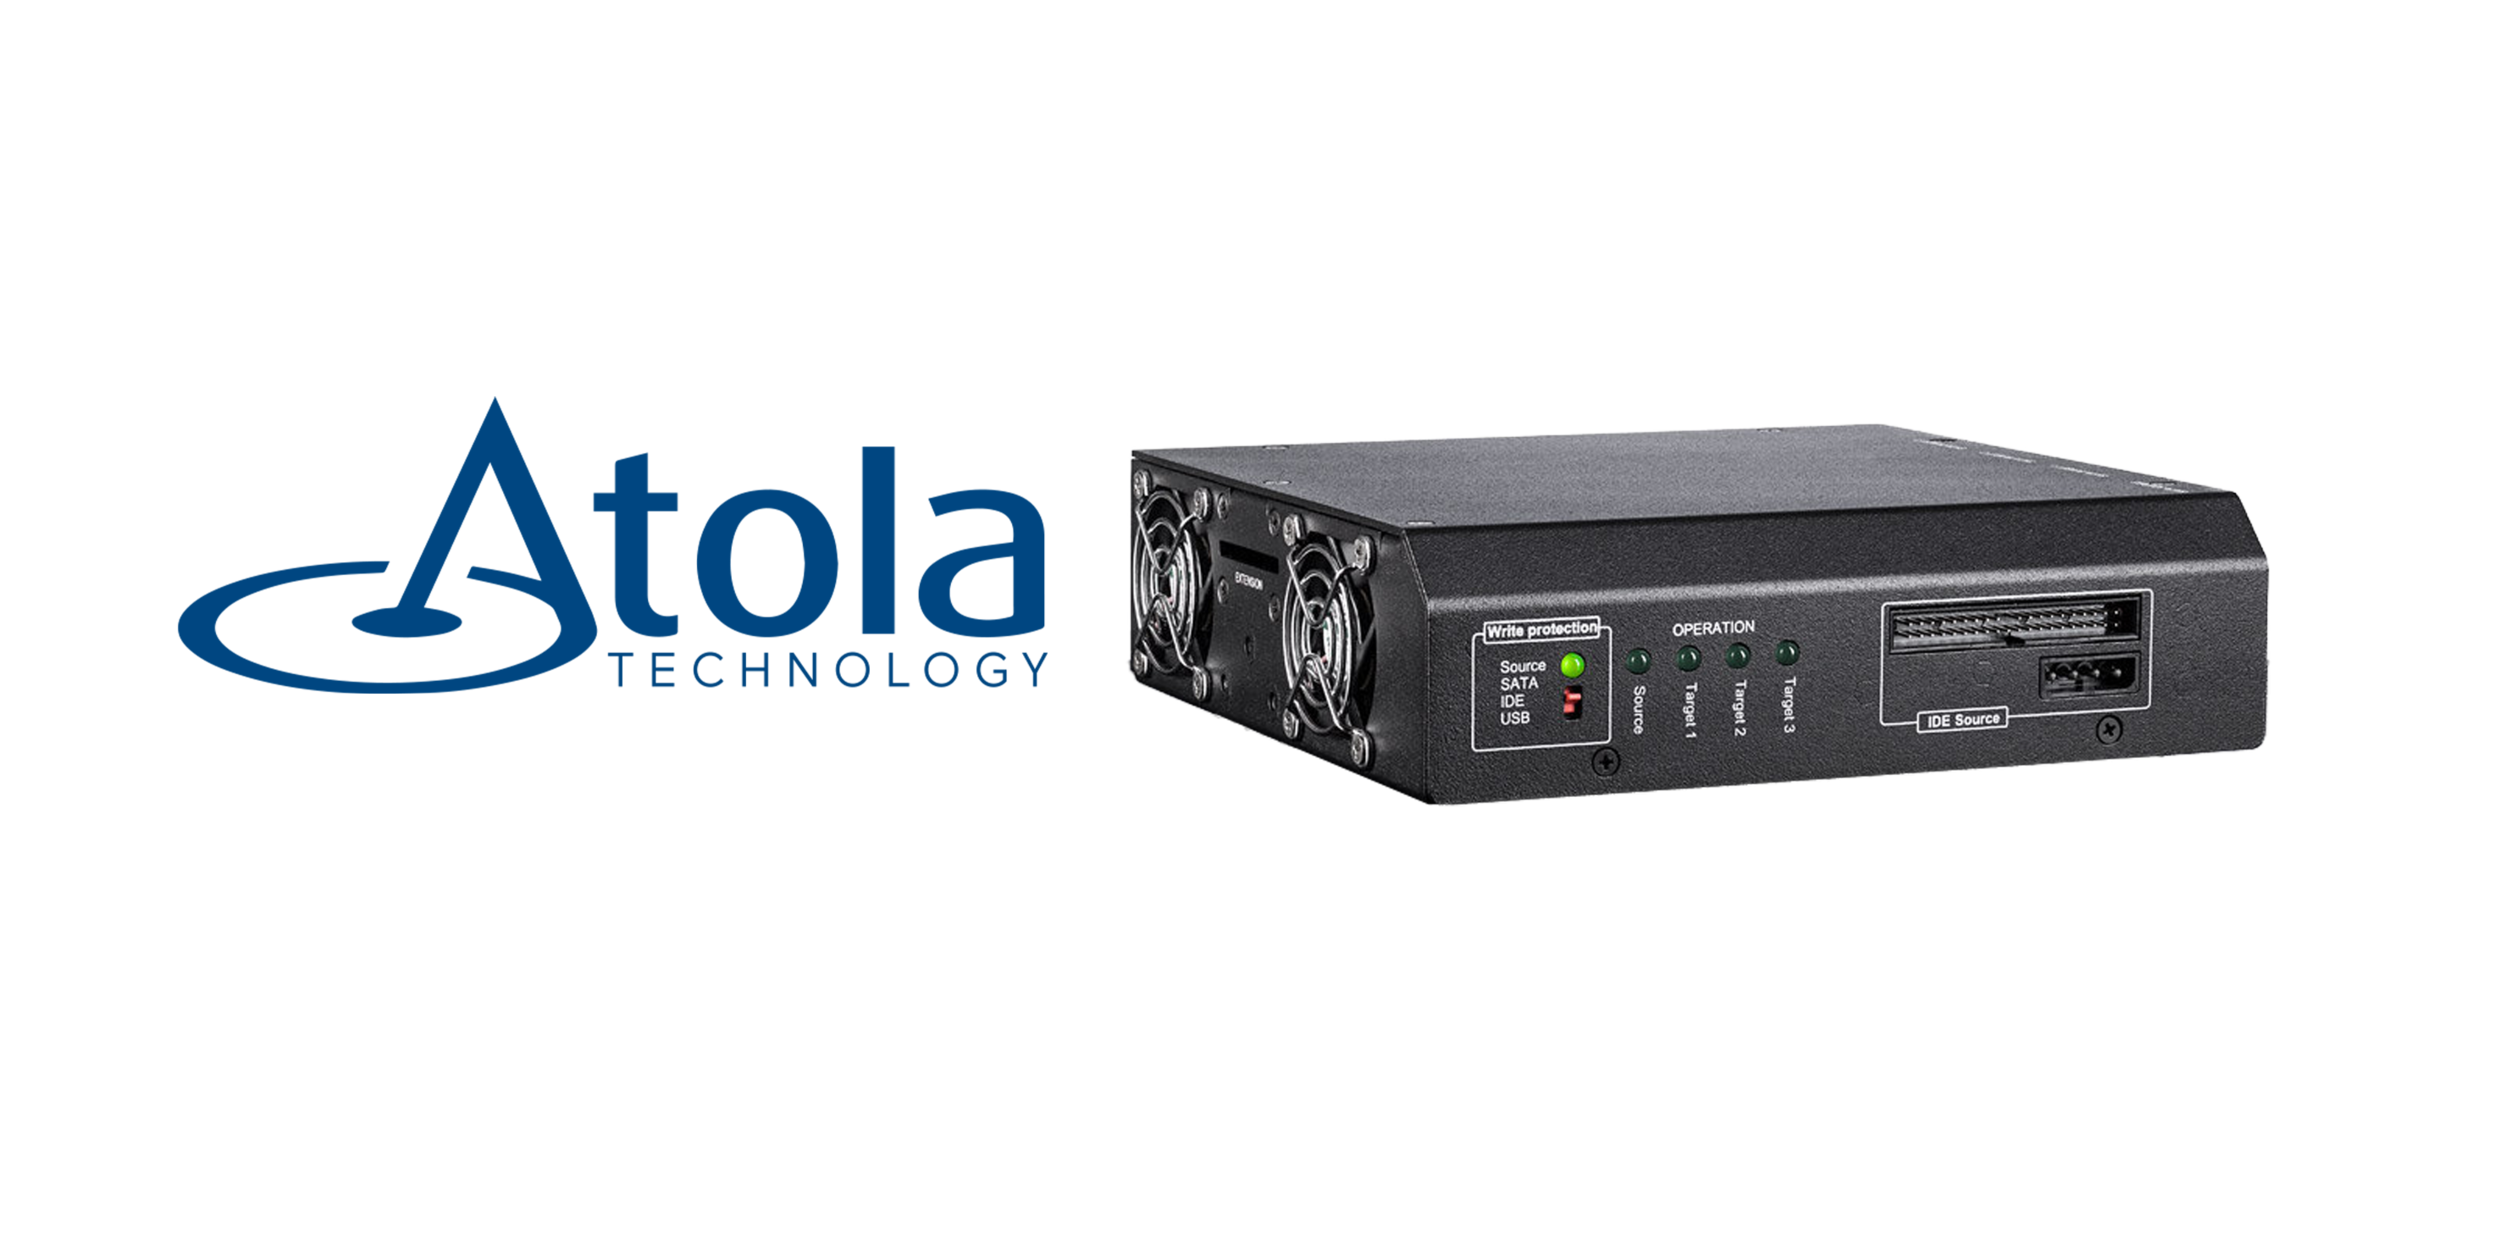 Atola Insight et Taskforce, des produits ultra-performants pour la duplication forensique de disques